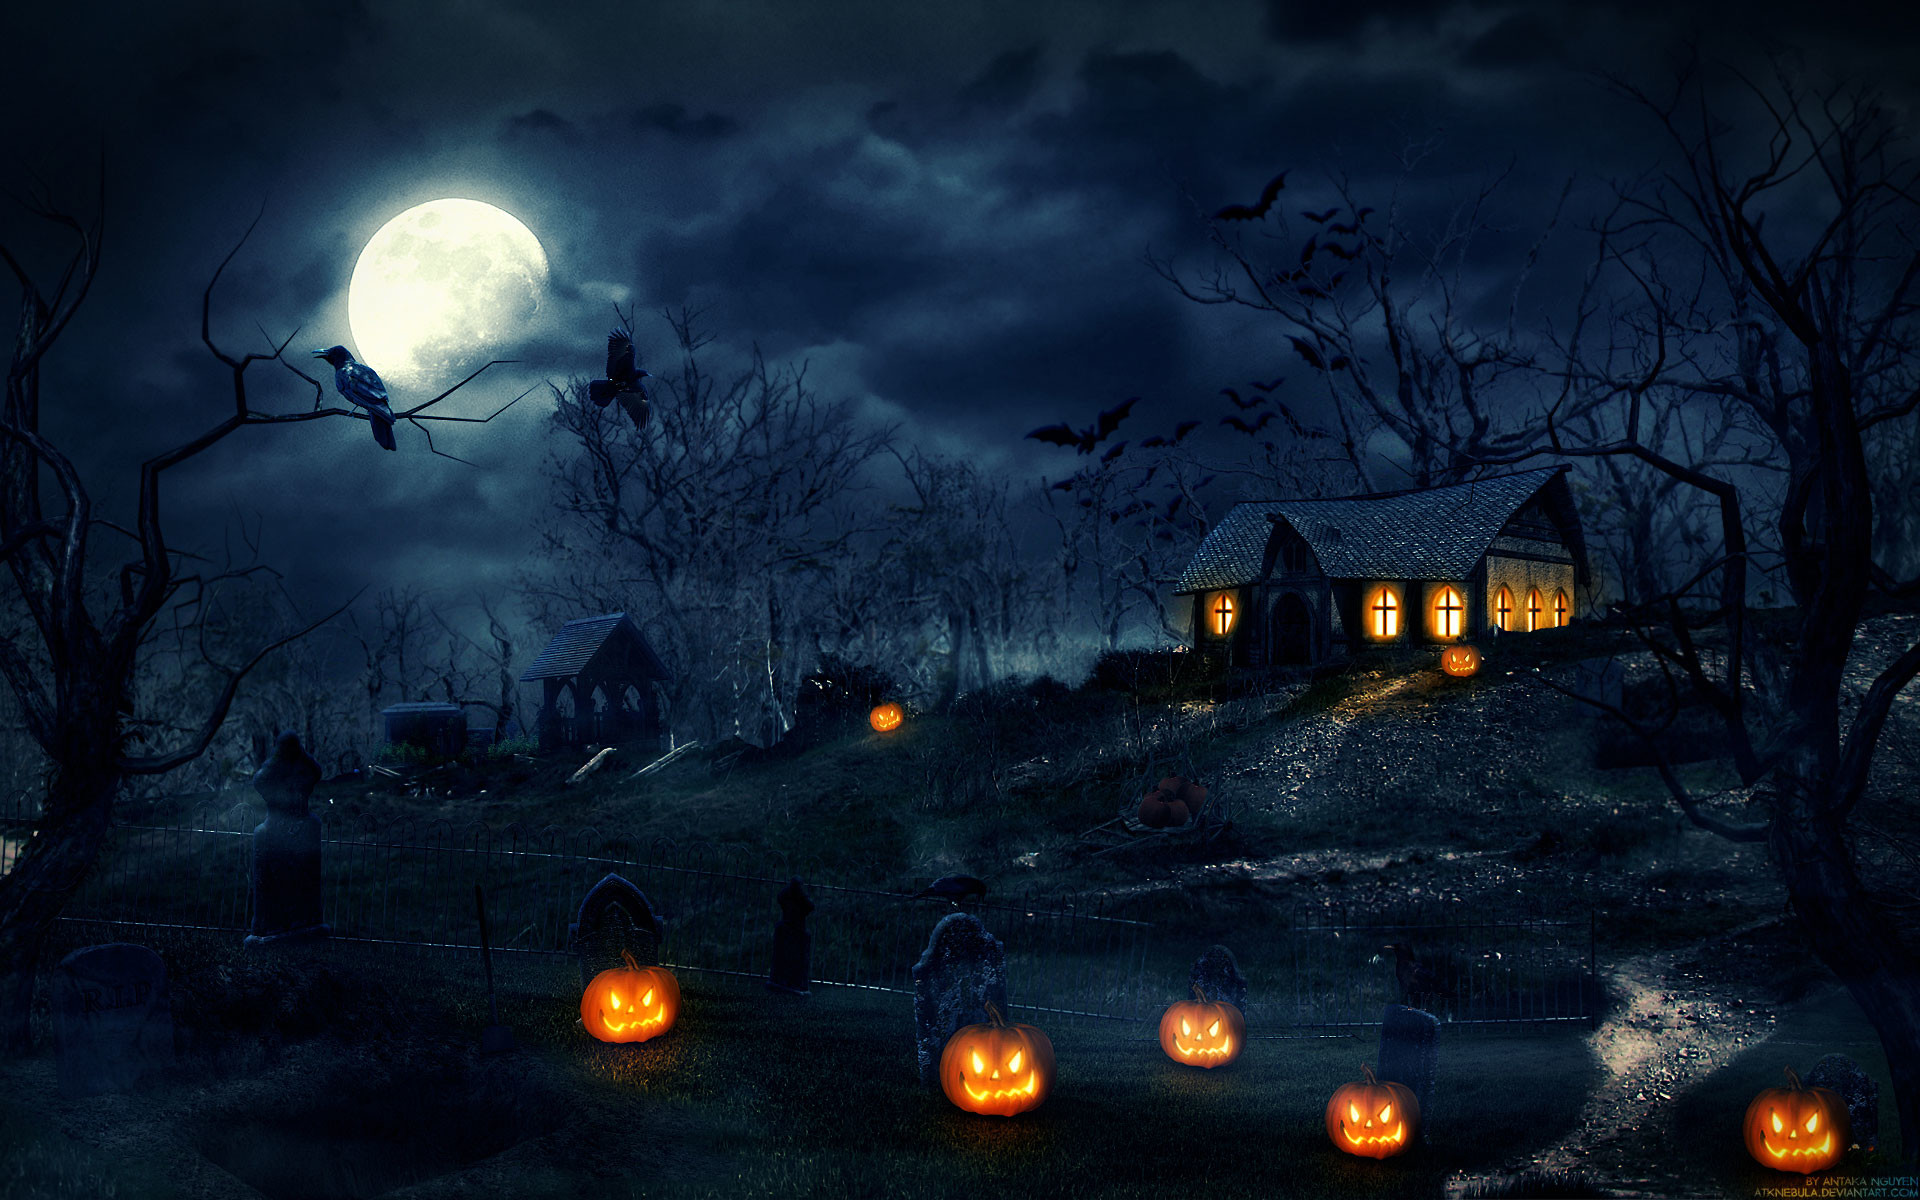 Tận hưởng không khí lễ hội Halloween với 2014 Halloween Night Wallpaper HD. Những hình ảnh nền đẹp mắt và kinh dị này sẽ khiến cho các bạn trở nên thích thú và háo hức chờ đợi đêm Halloween.